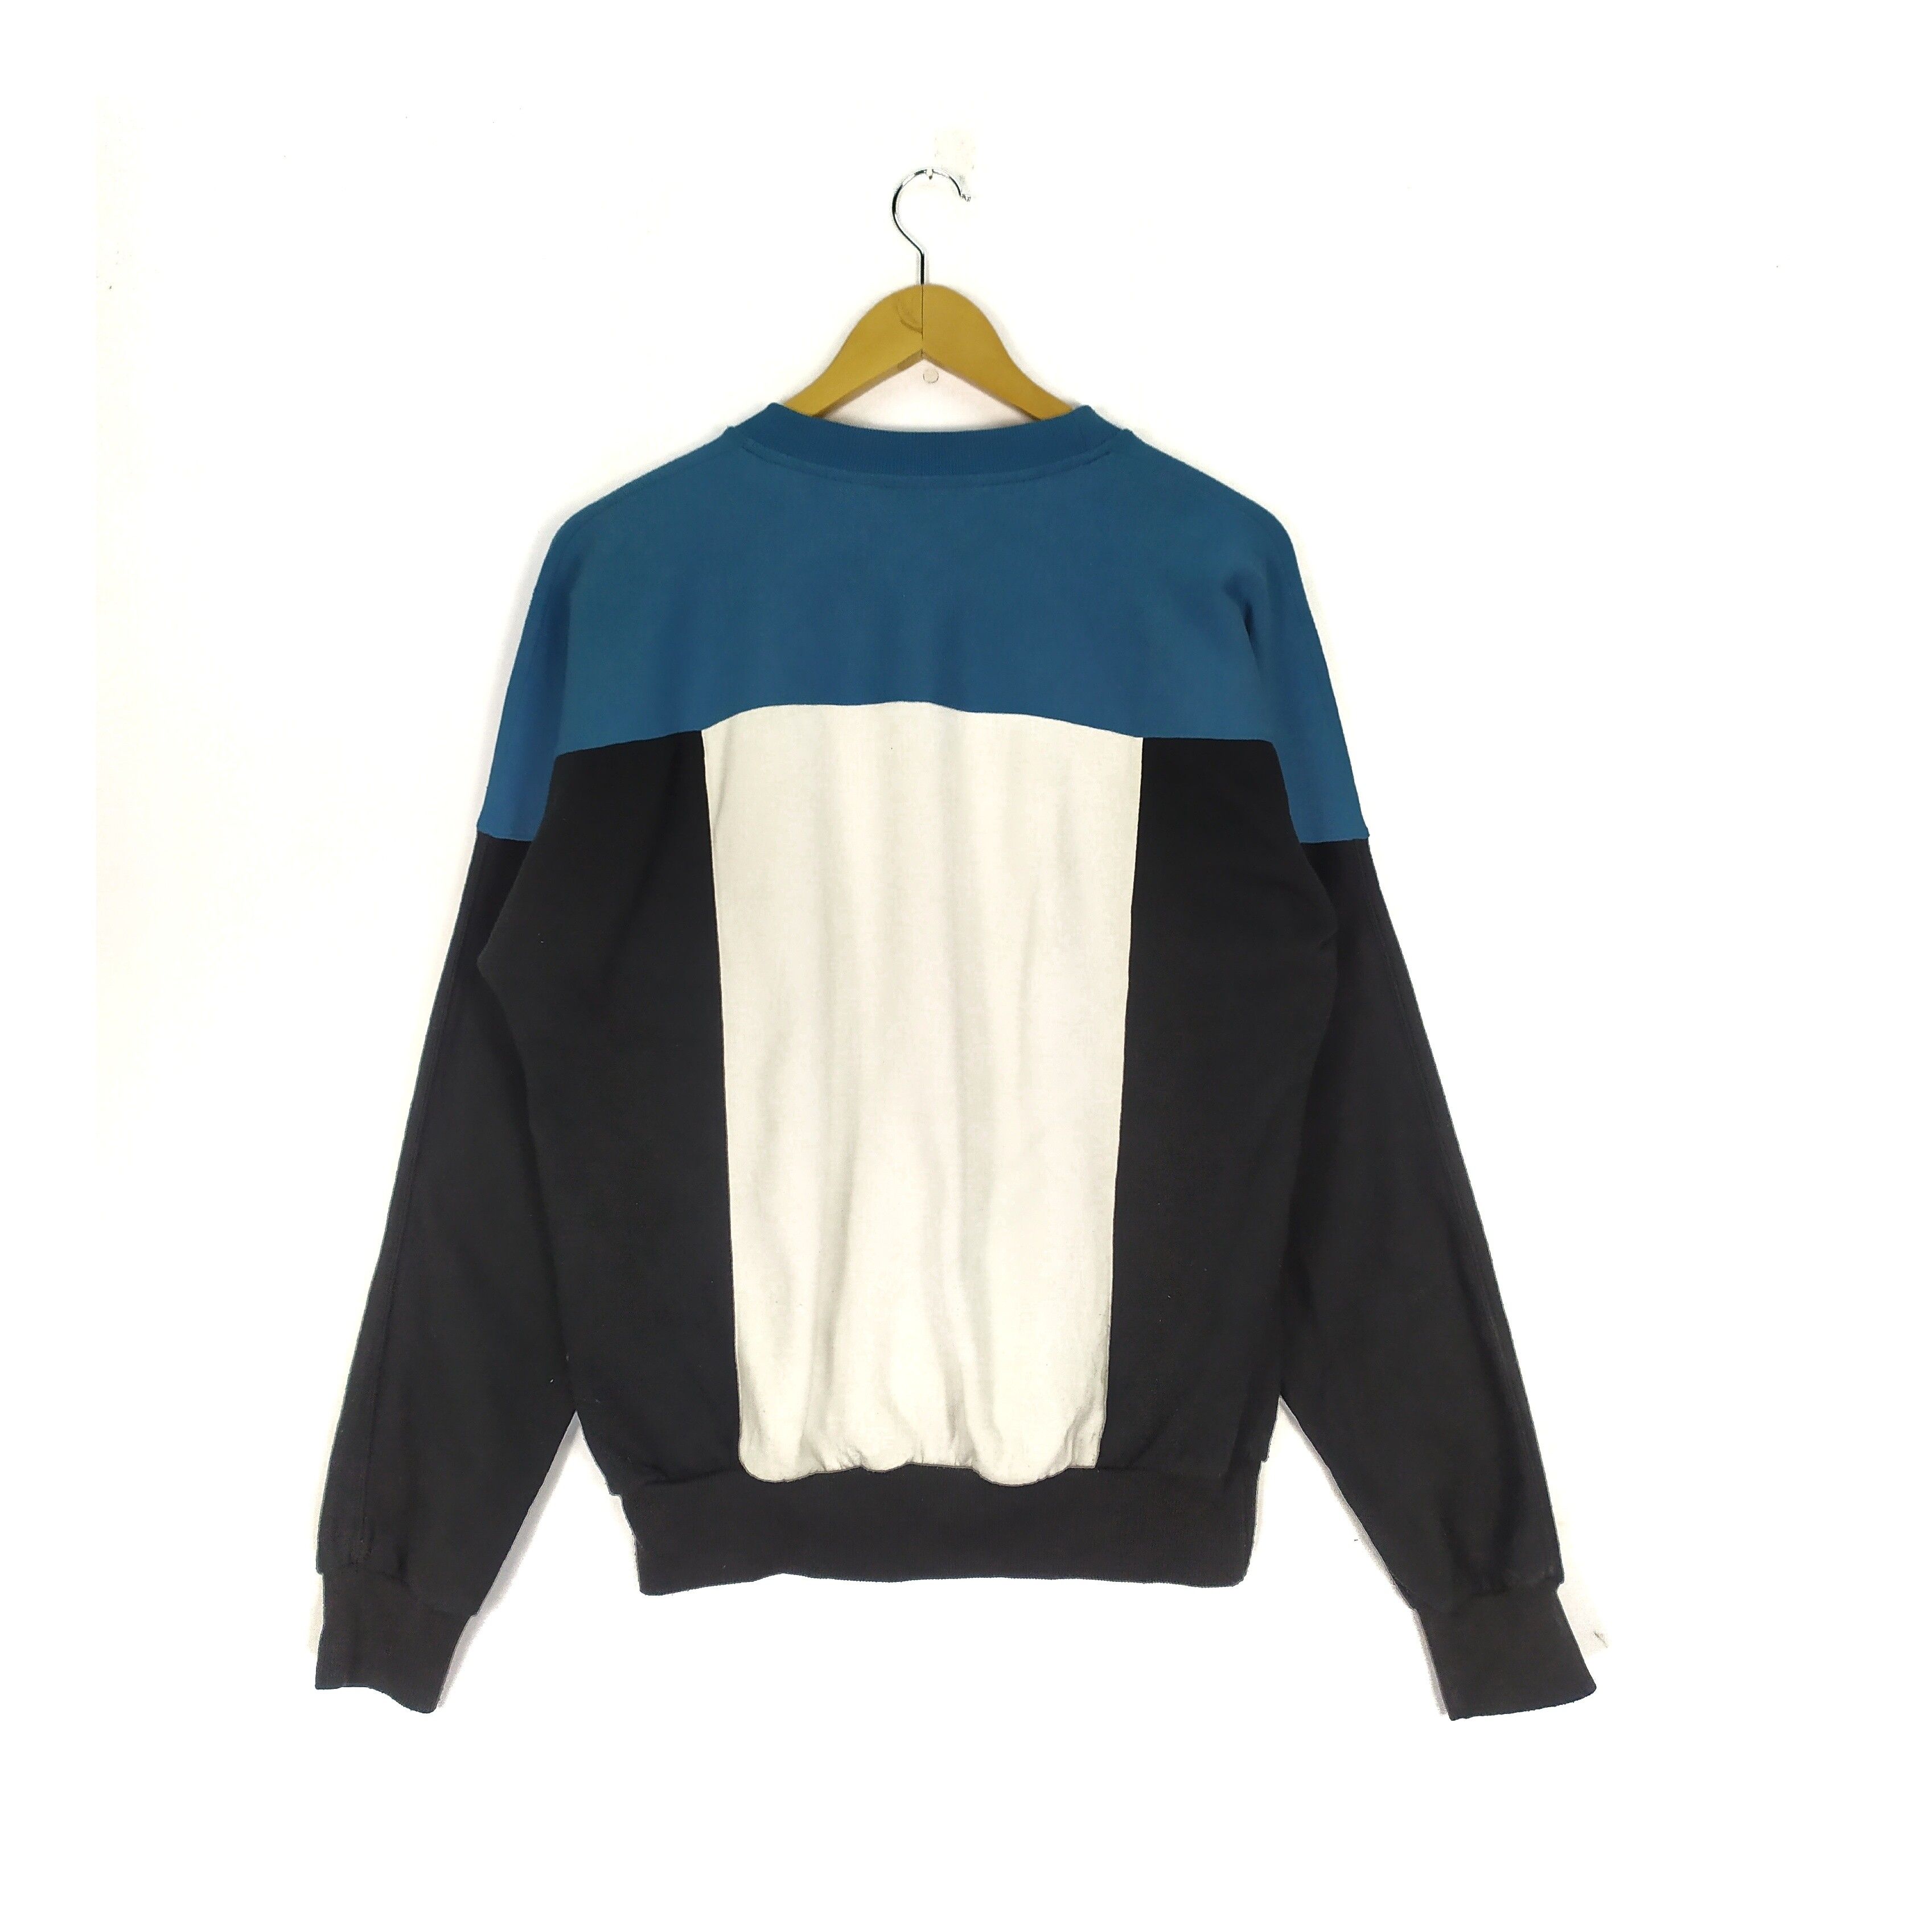 Adidas Embroidered Vintage 90s Crewneck Sweatshirt - 2